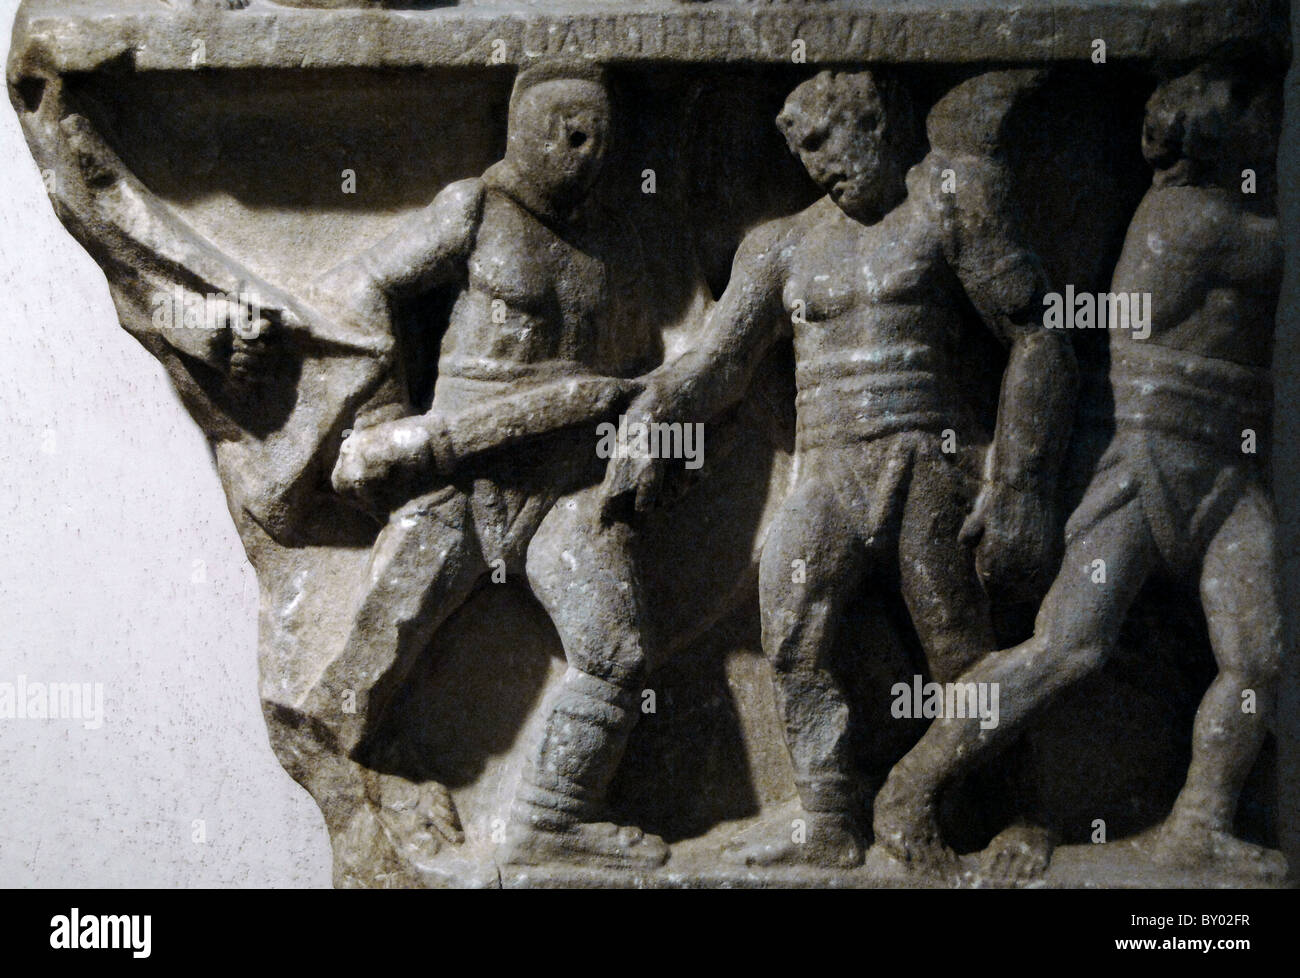 El arte romano conmemoran las victorias de socorro un gladiator representados en diversas luchas con sus adversarios. Foto de stock